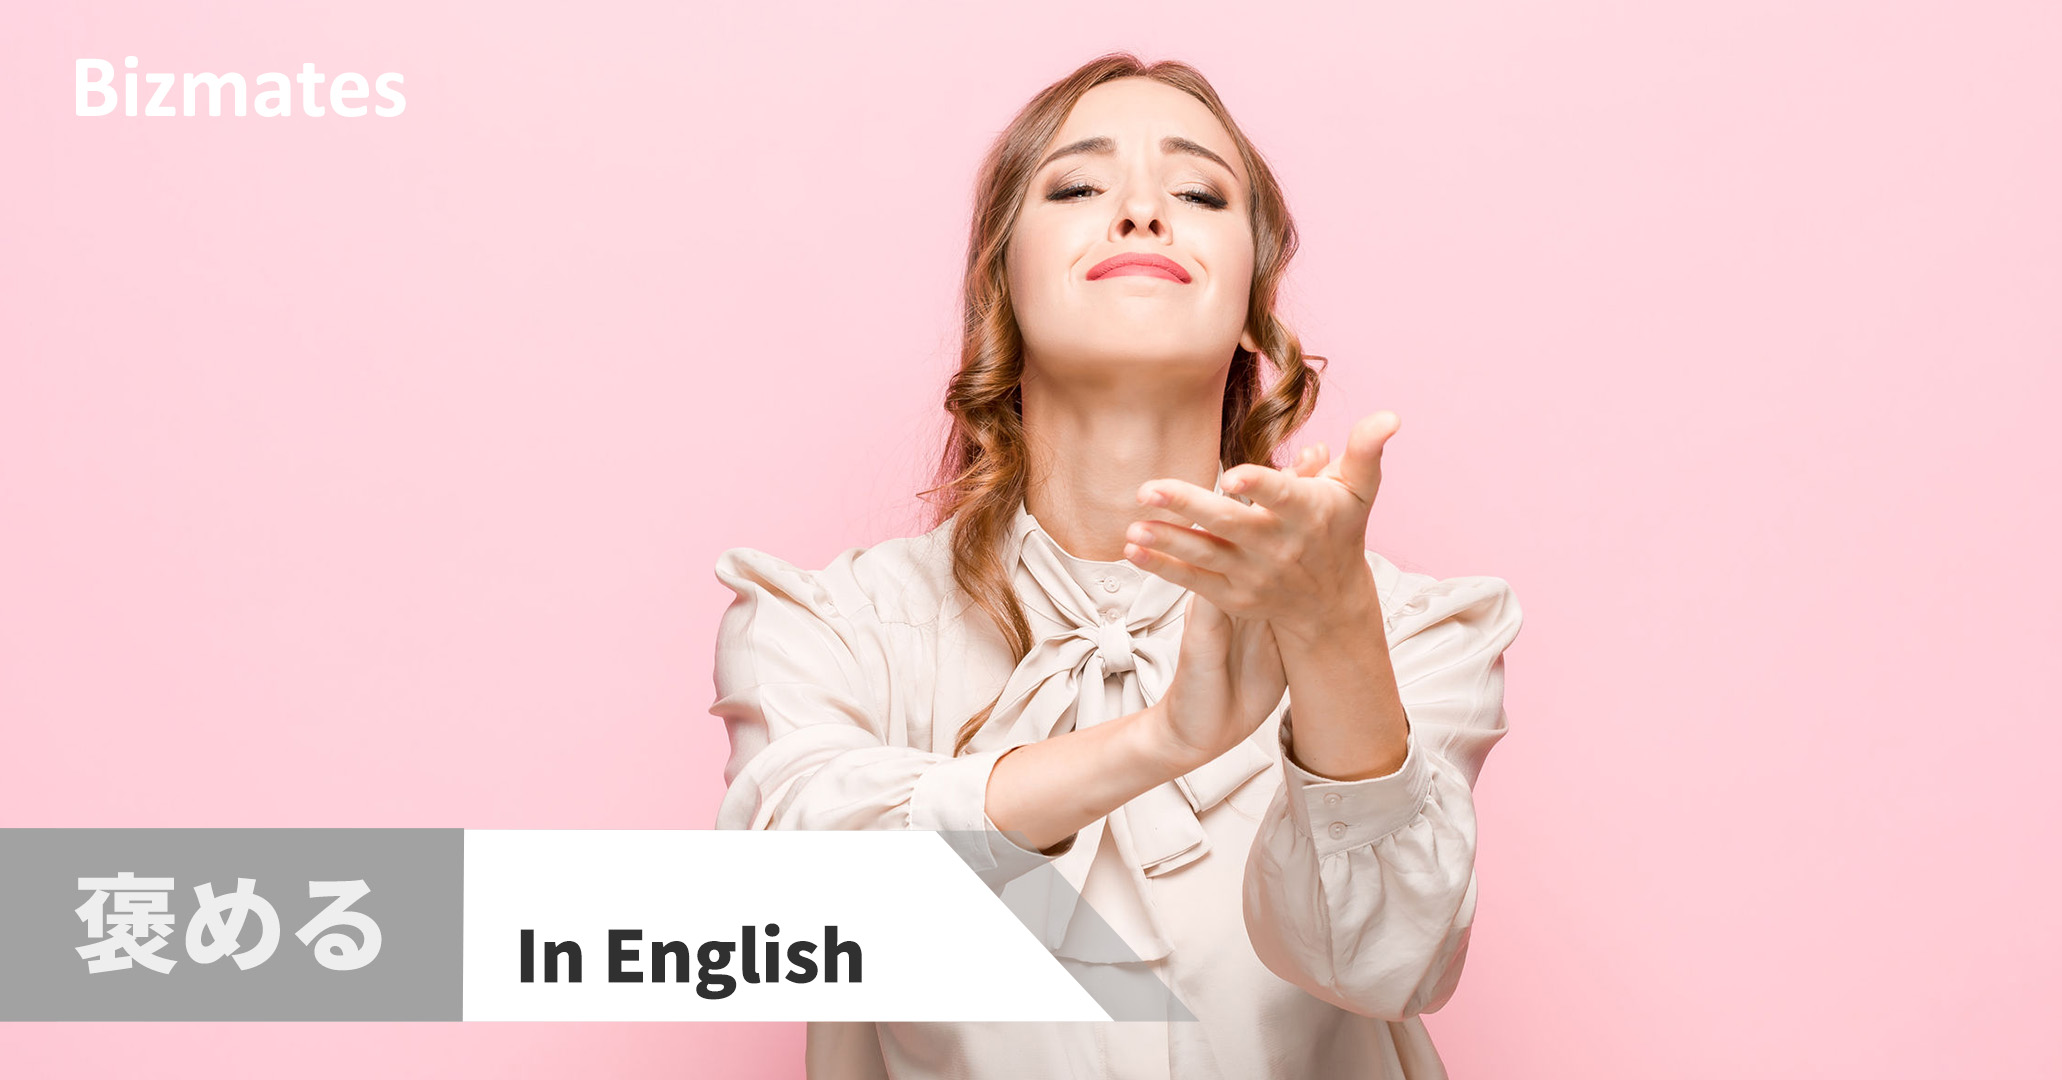 褒める って英語で何と言う 英会話で使う褒め言葉表現 英語で暮らしと仕事が楽しくなるビズメイツブログ Bizmates Blog